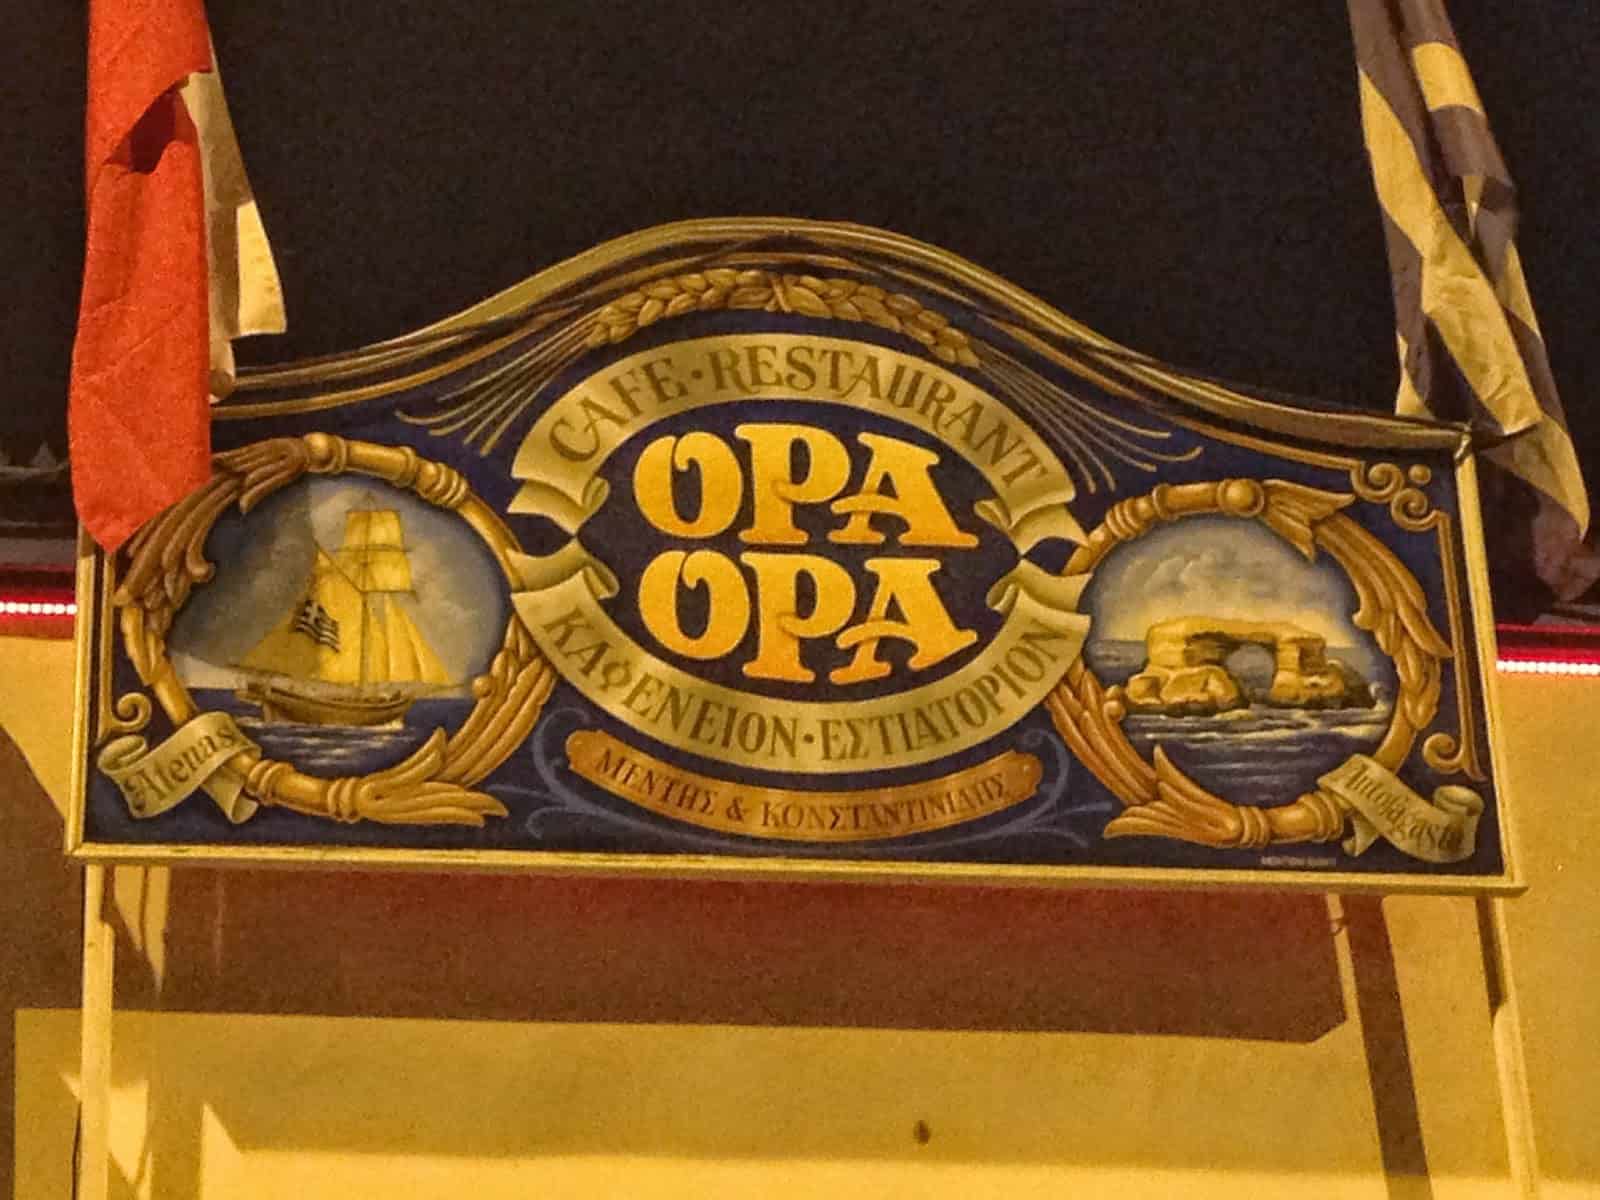 Opa-Opa Comida Griega in Santiago de Chile